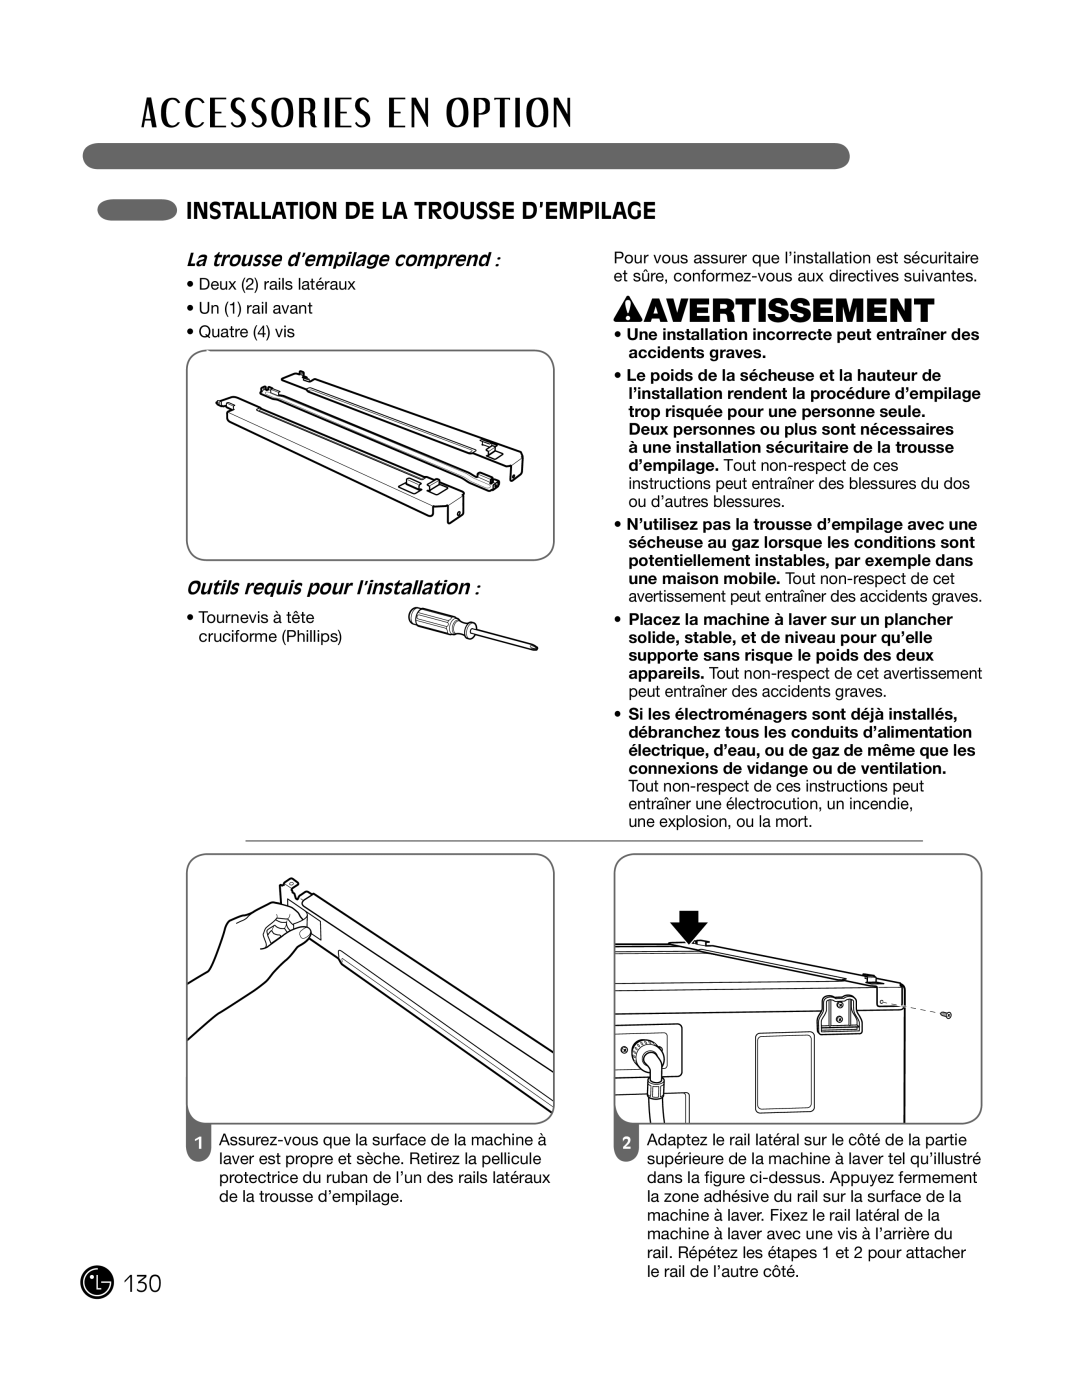 LG Electronics P154 manual instaLLation de La trousse d’eMpiLaGe, La trousse d’empilage comprend, wAVERTISSEMENT 